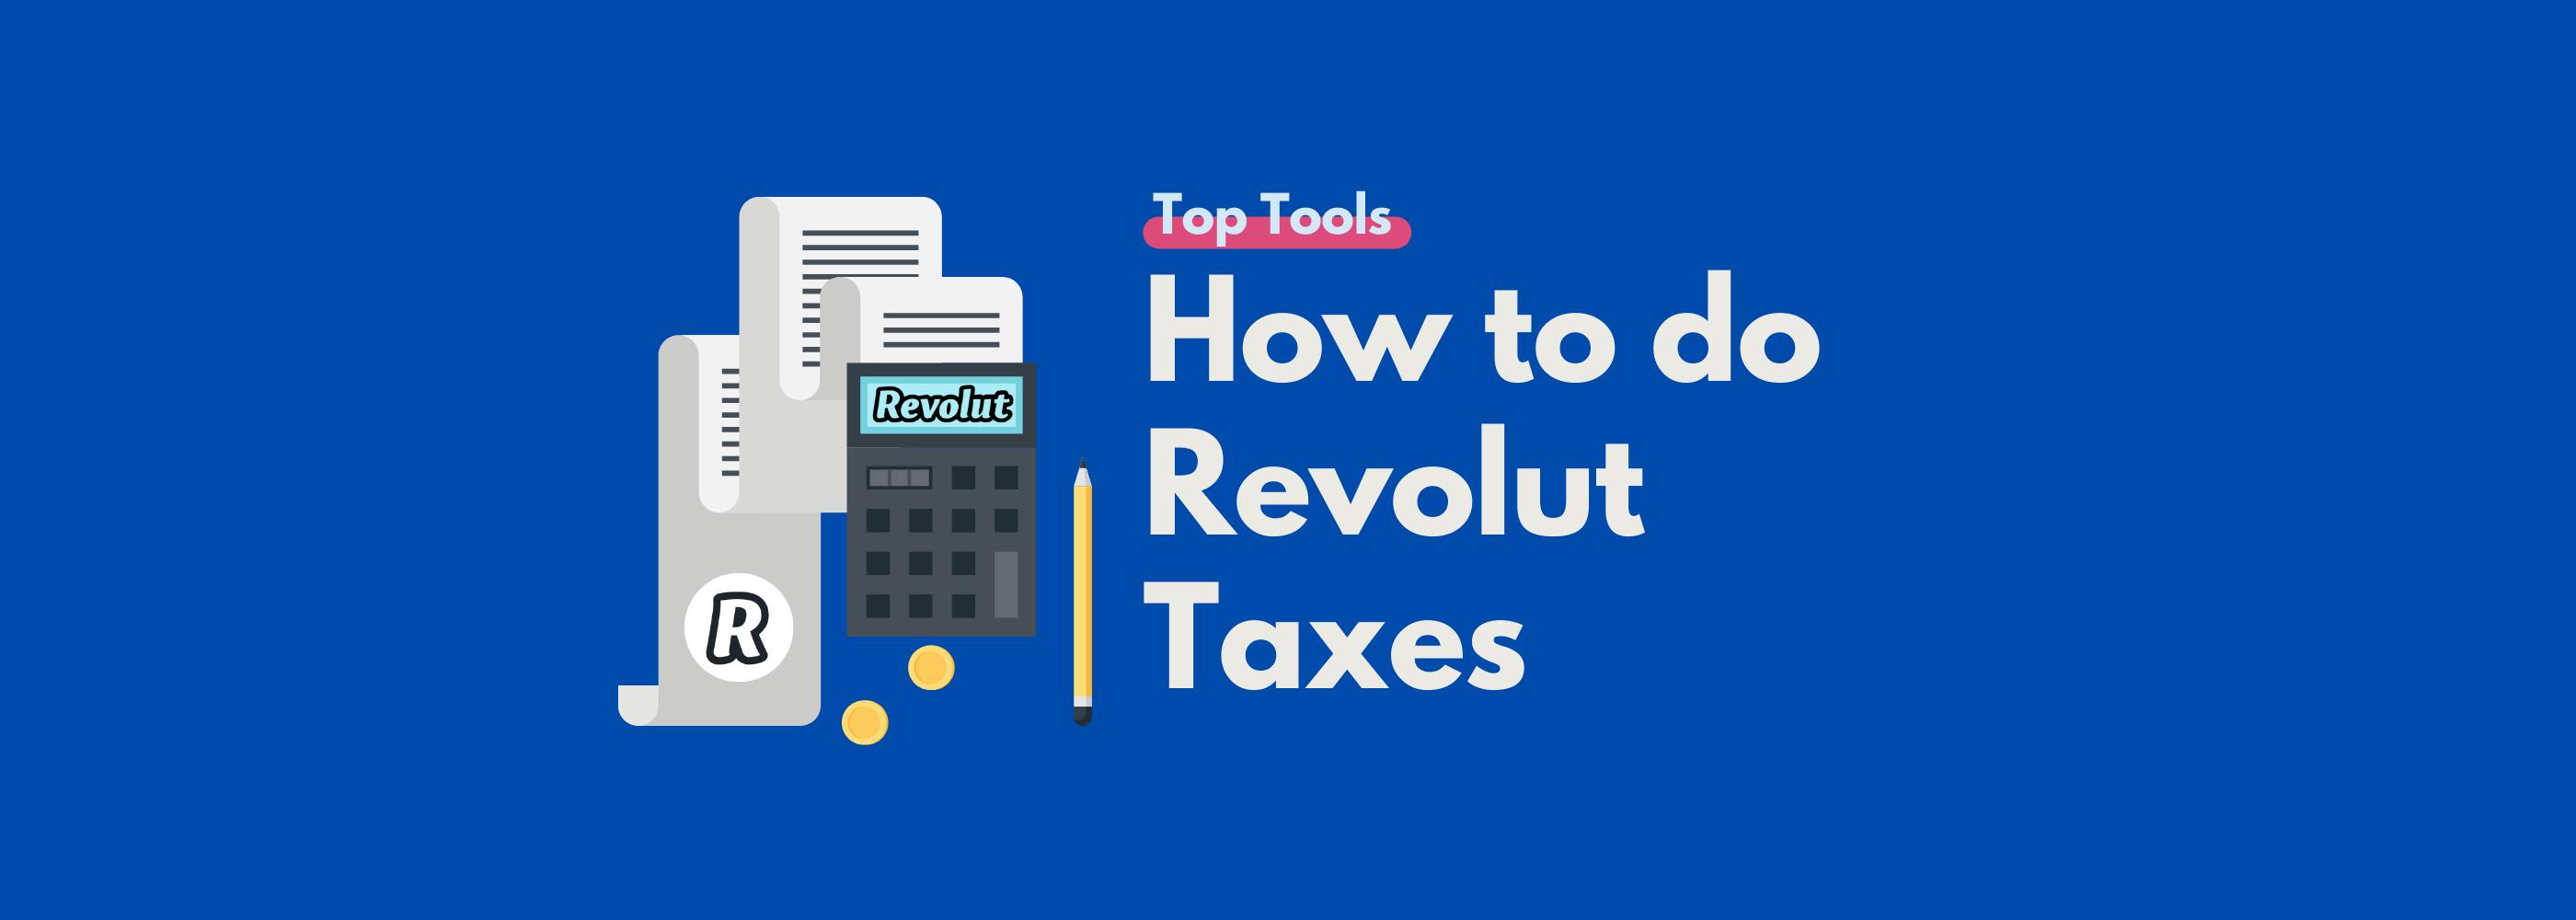 How to do Revolut Taxes